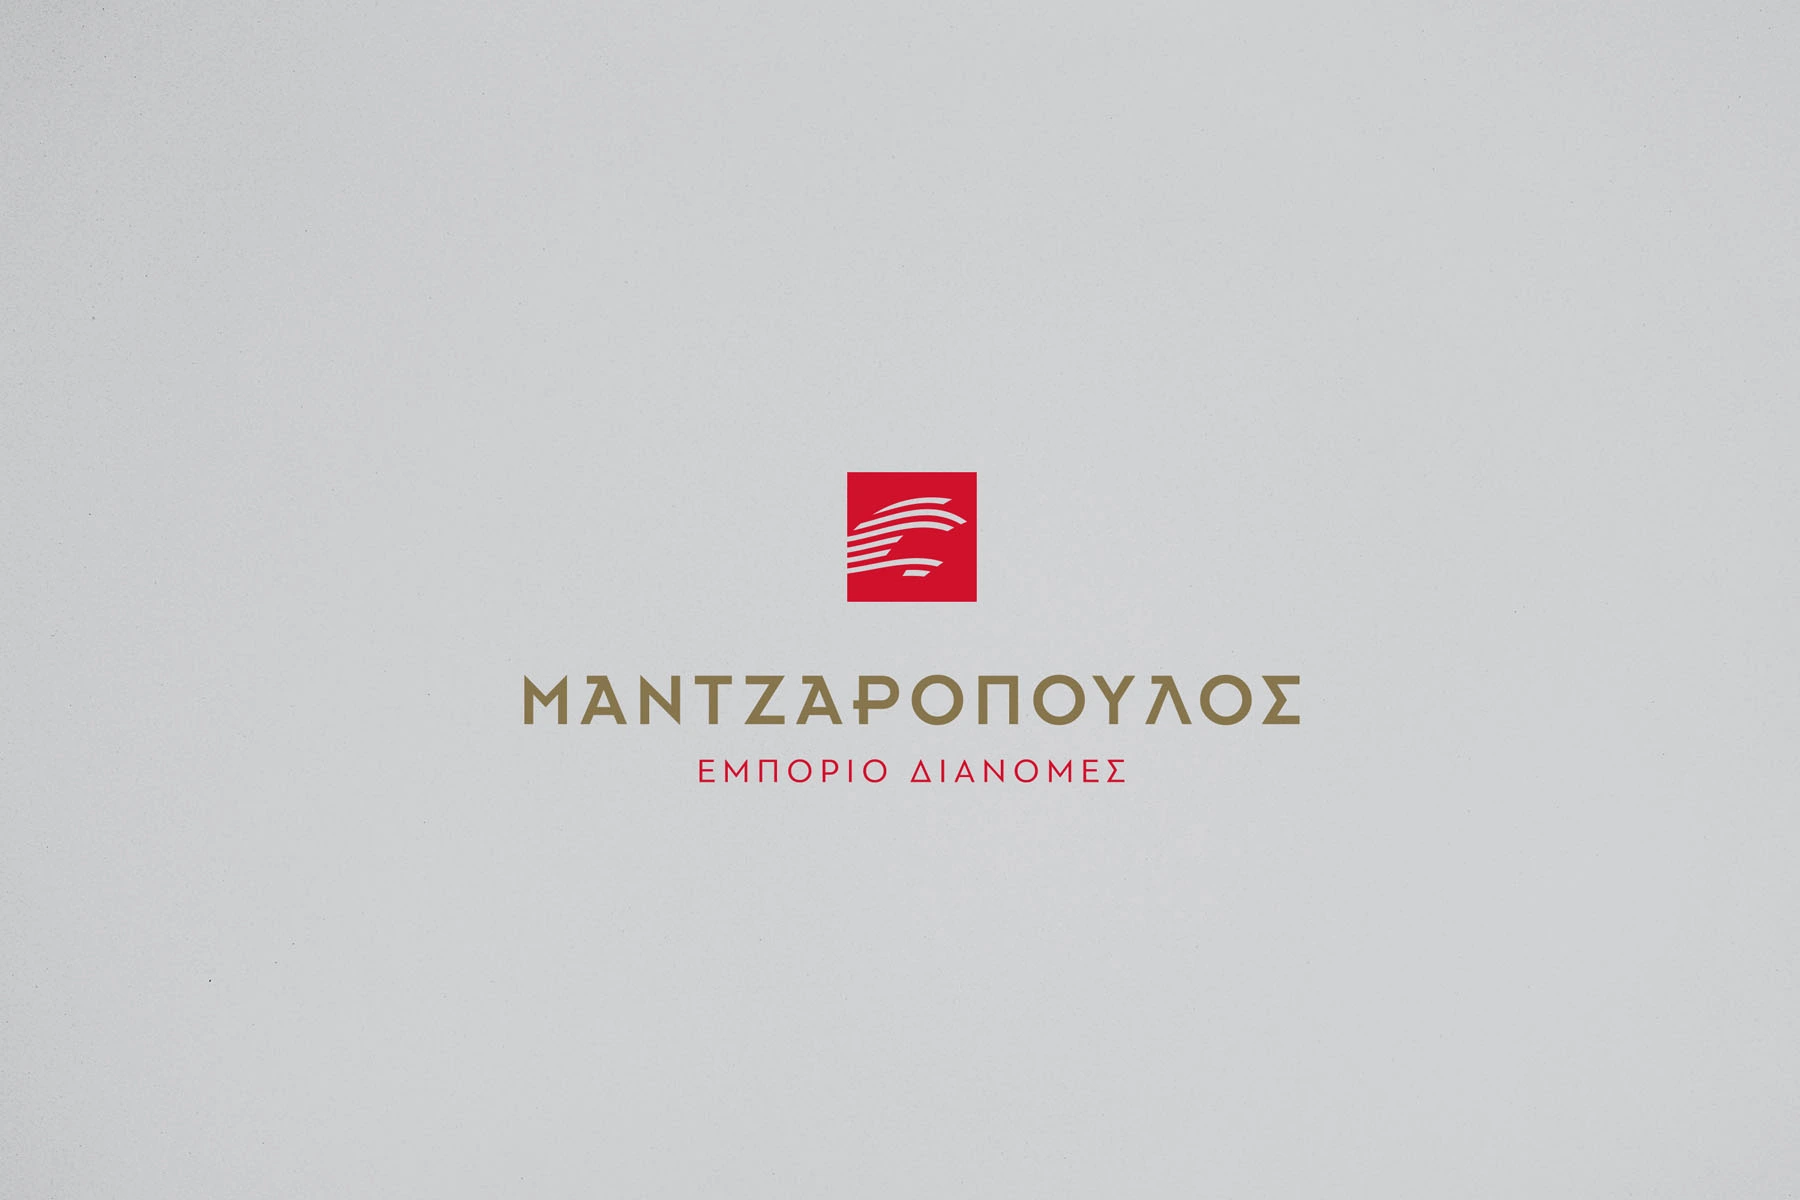 σχεδιασμός-εταιρικής-ταυτότητας-μεταφορικής-μαντζαρόπουλος